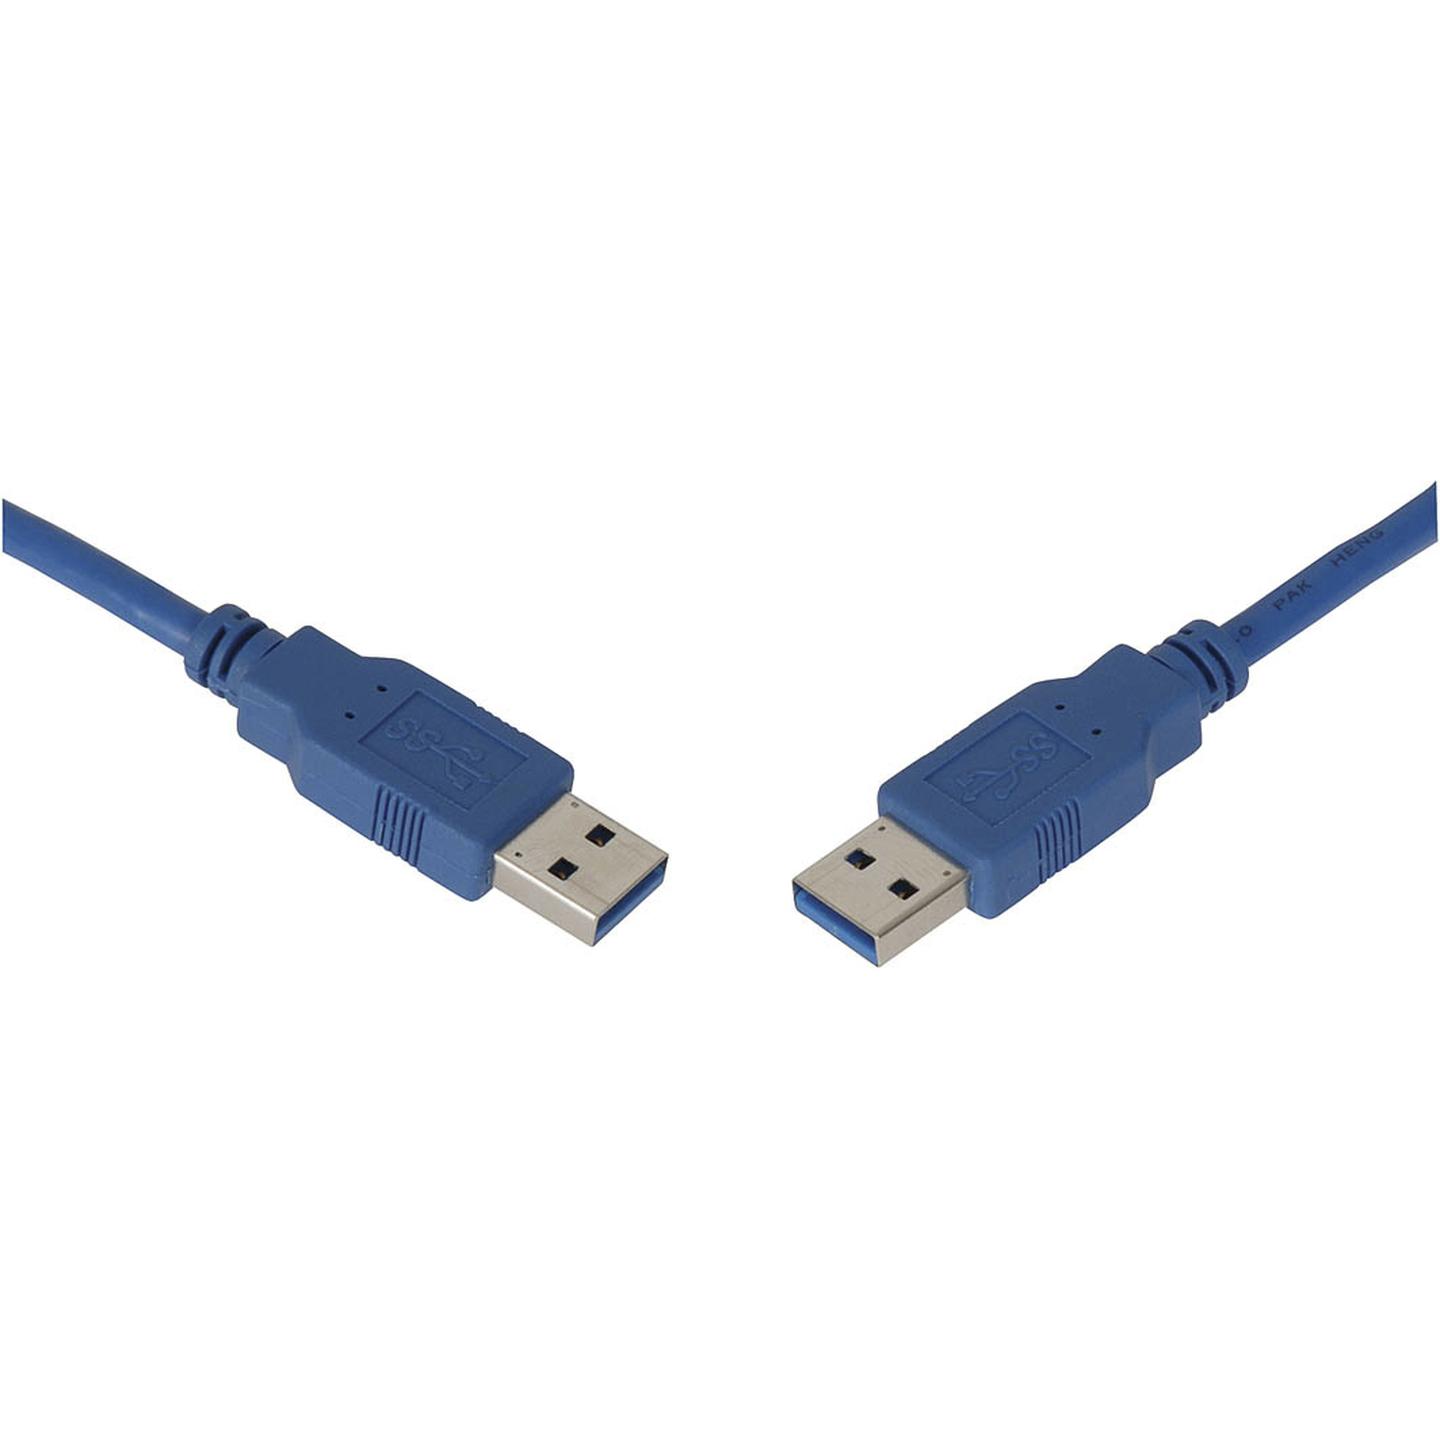 USB 3.0 Plug A to Plug A Cable 1.8m